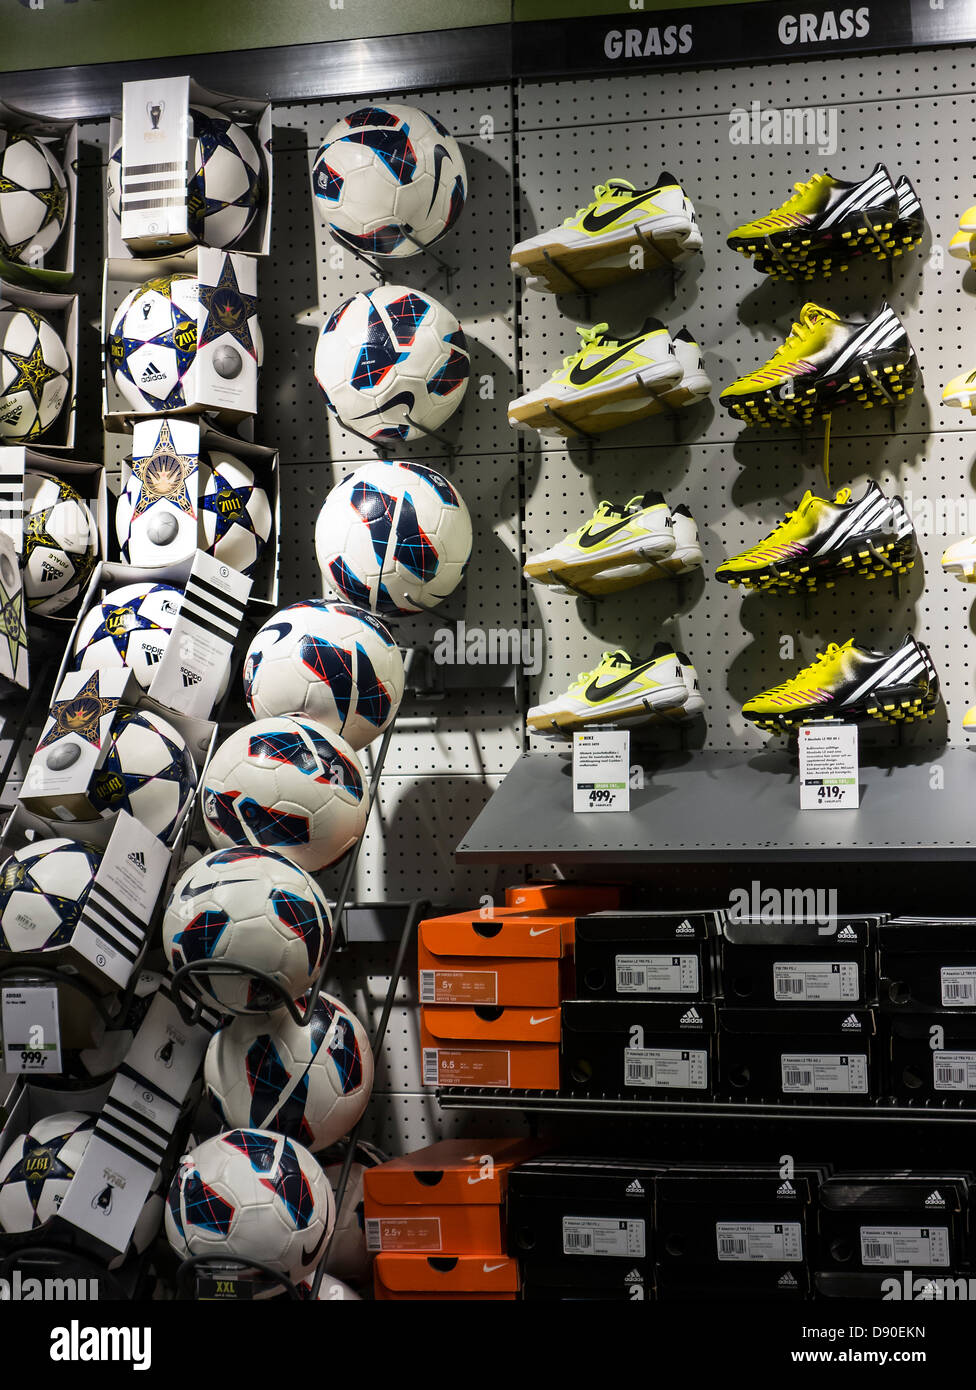 Tienda de futbol fotografías e imágenes de alta resolución - Alamy